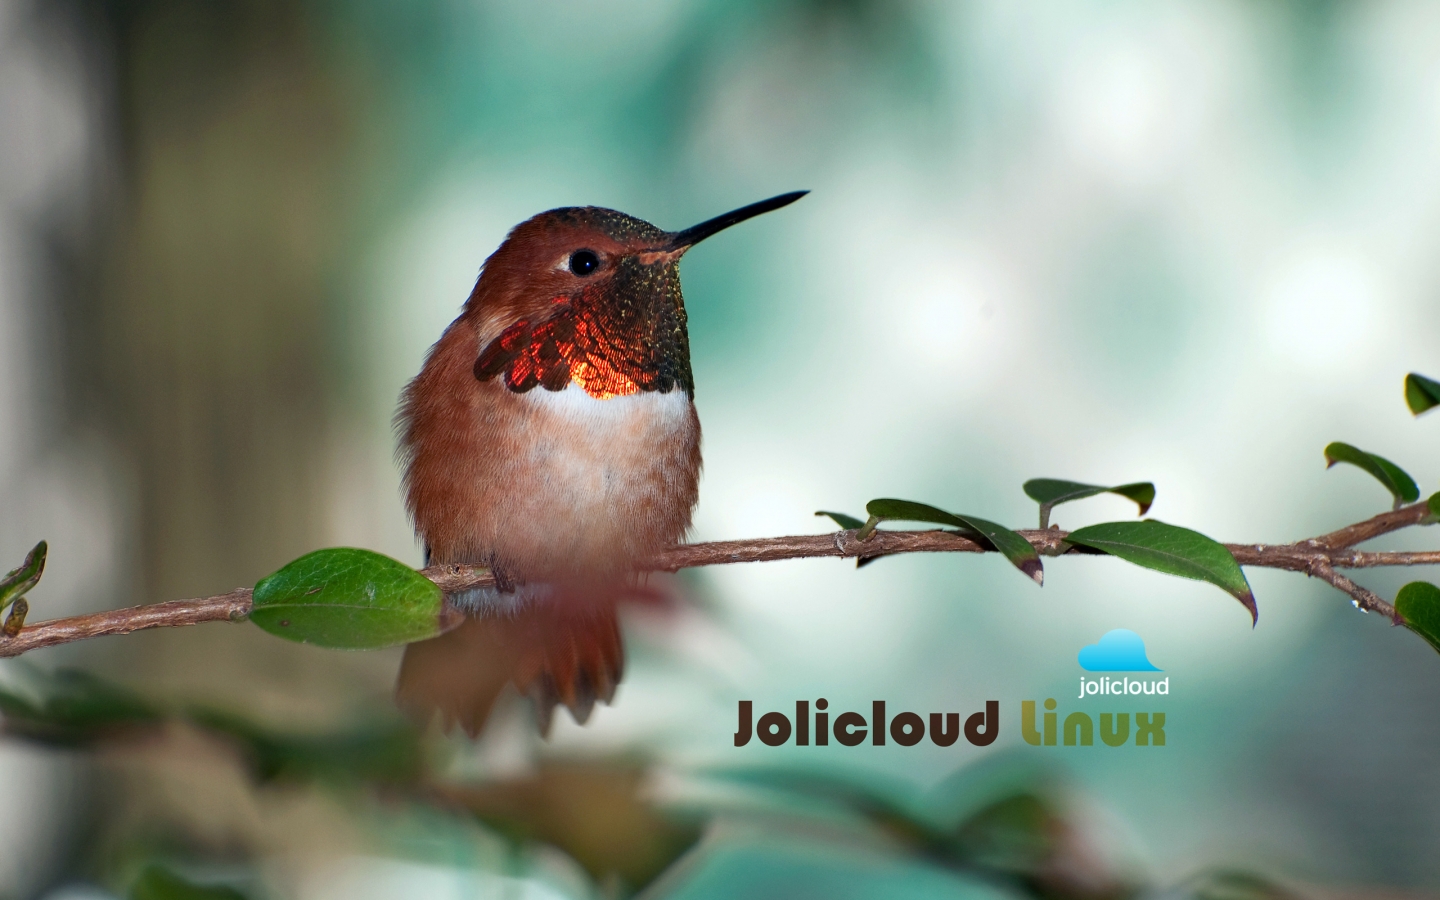 Jolicloud Linux Hummingbird for 1440 x 900 widescreen resolution